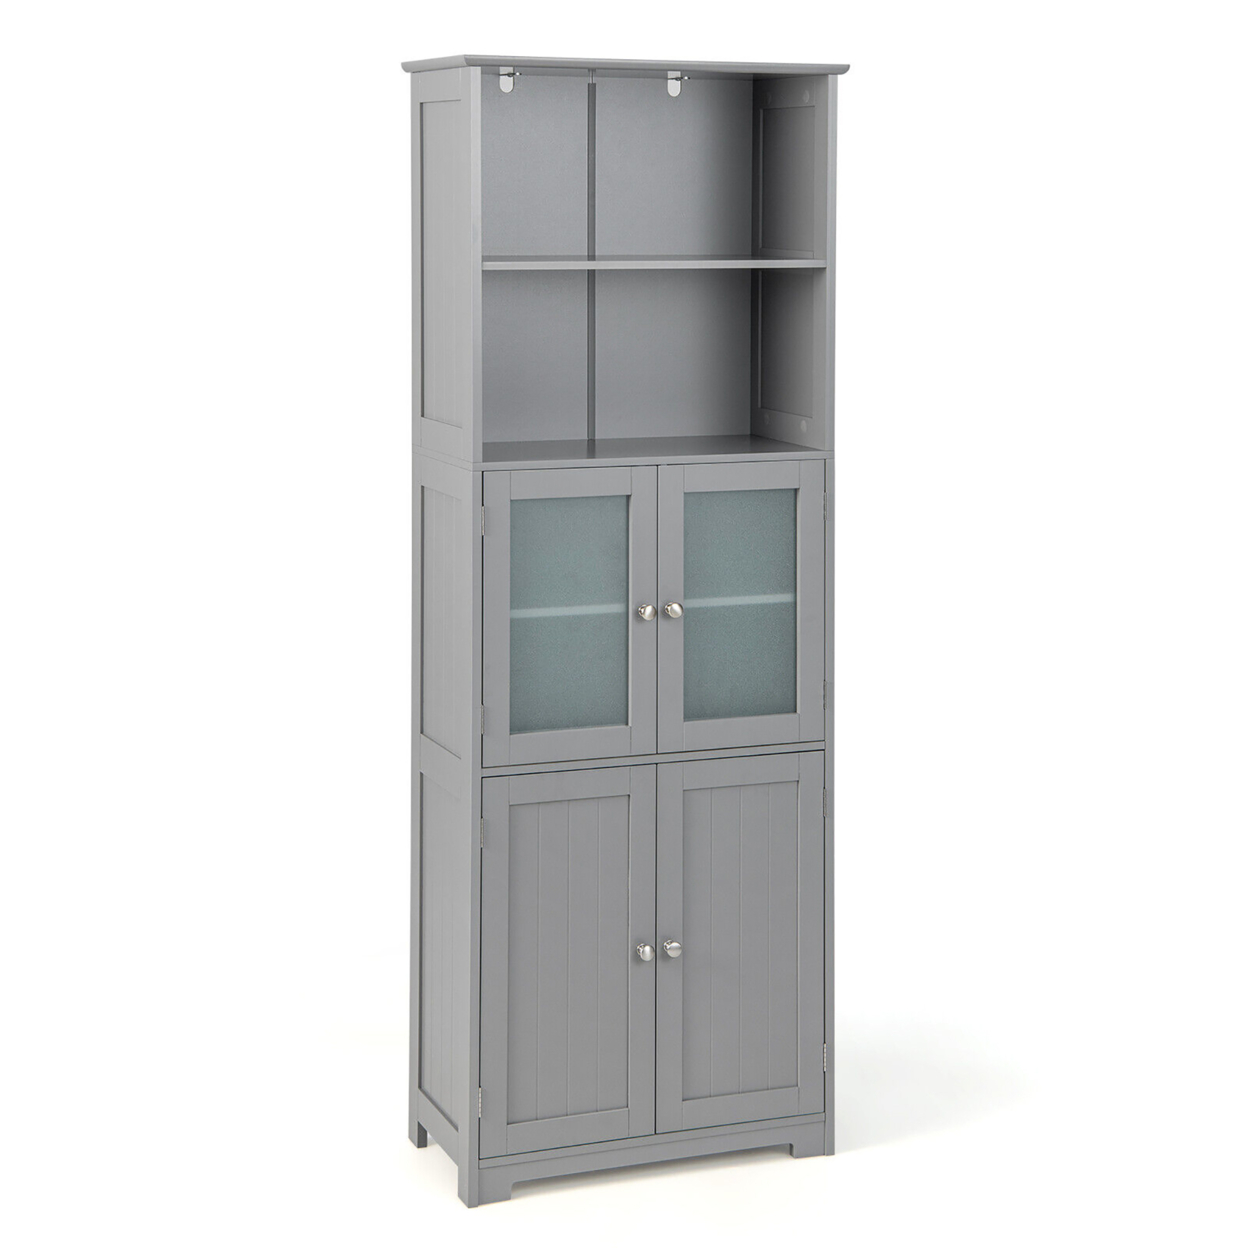 Bathroom Tall Storage Cabinet Linen Tower W/ Glass Door & Adjustable Shelf - Gray